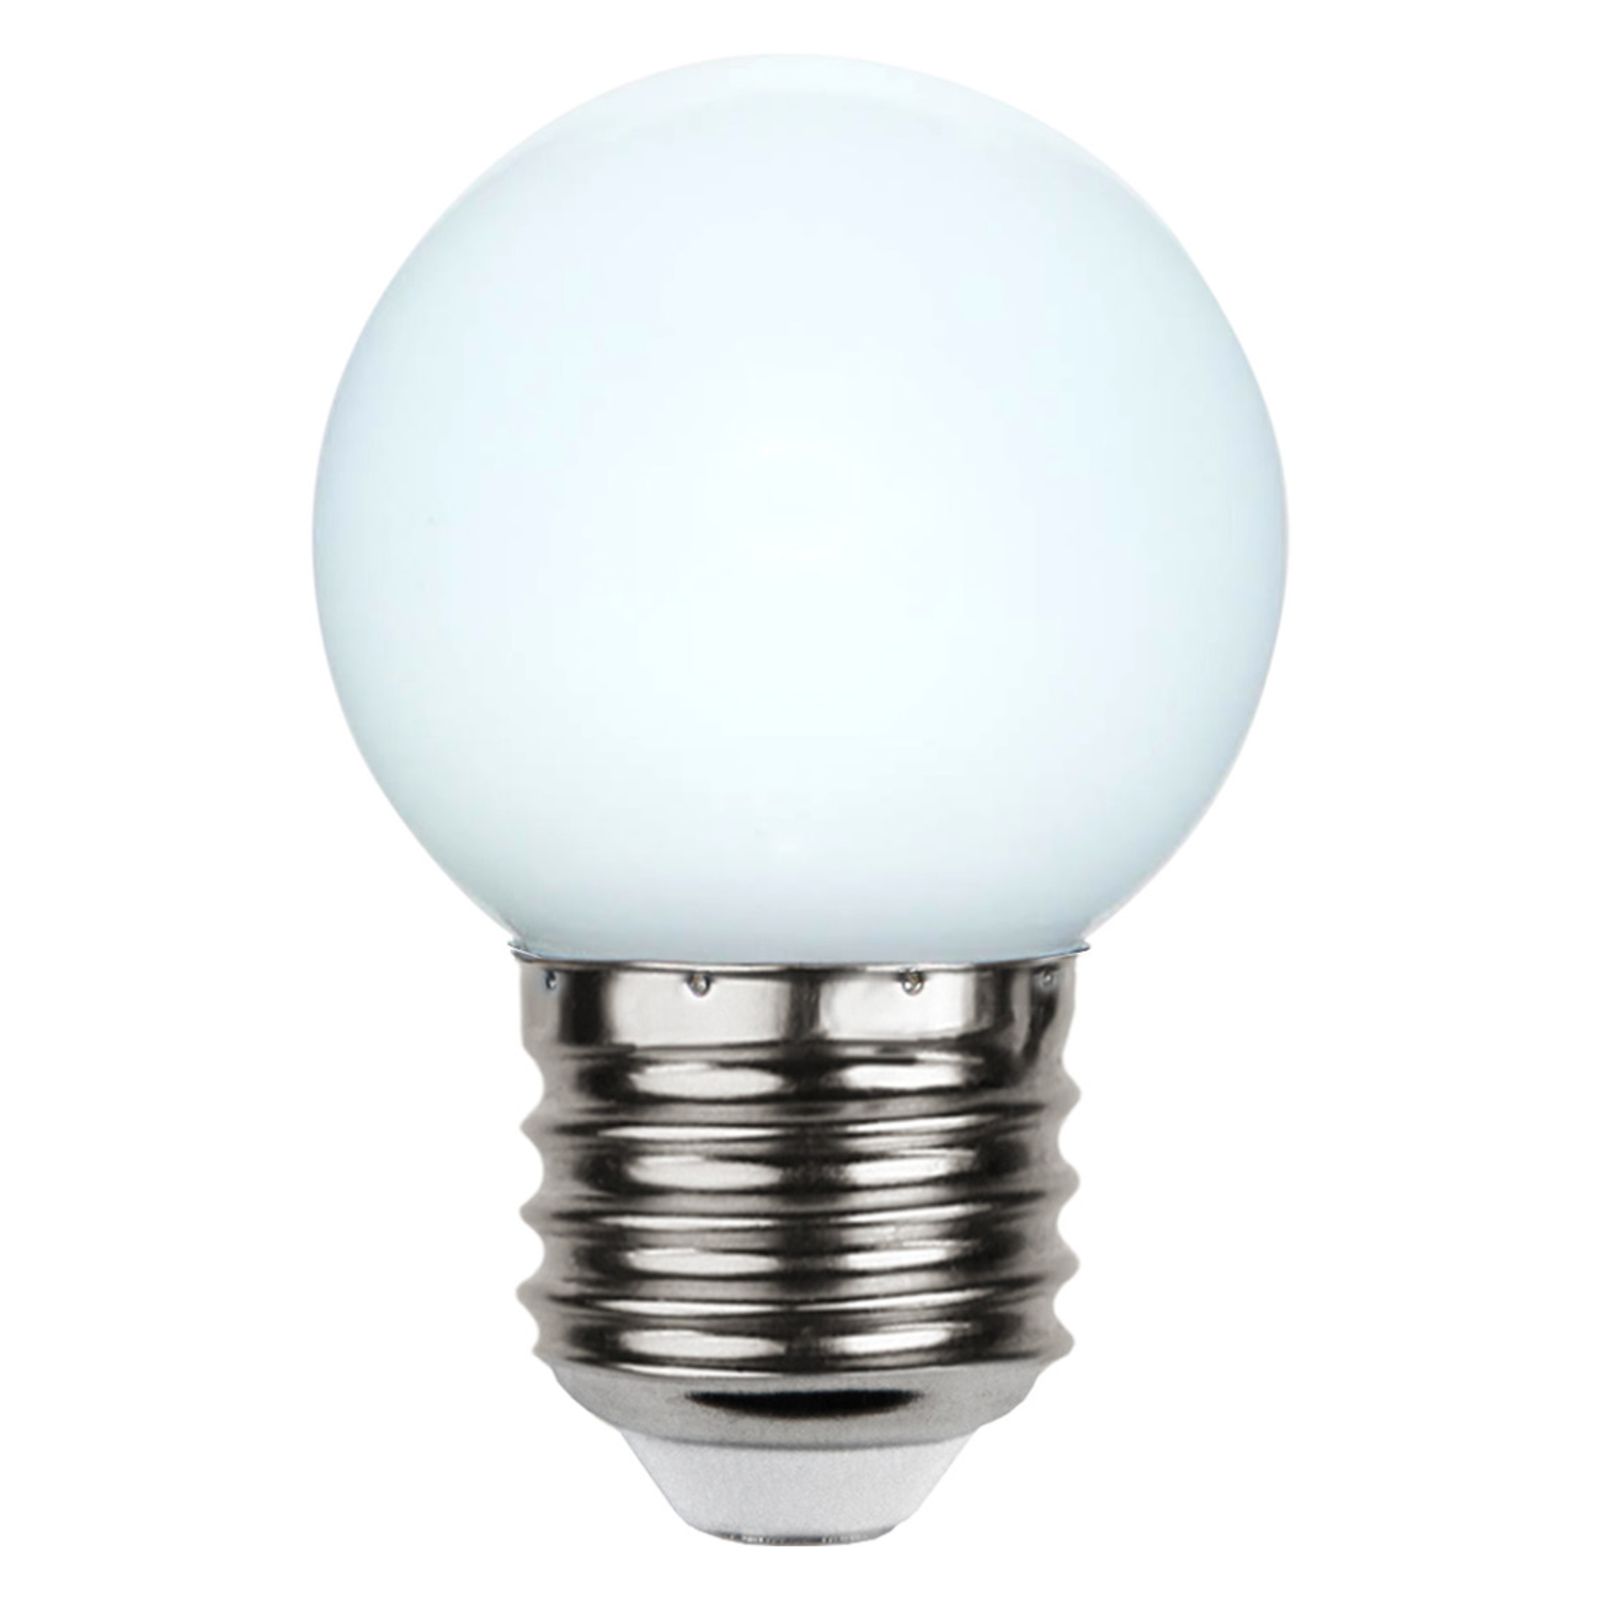 LED bulb E27 G45 for string lights, white 6,500 K